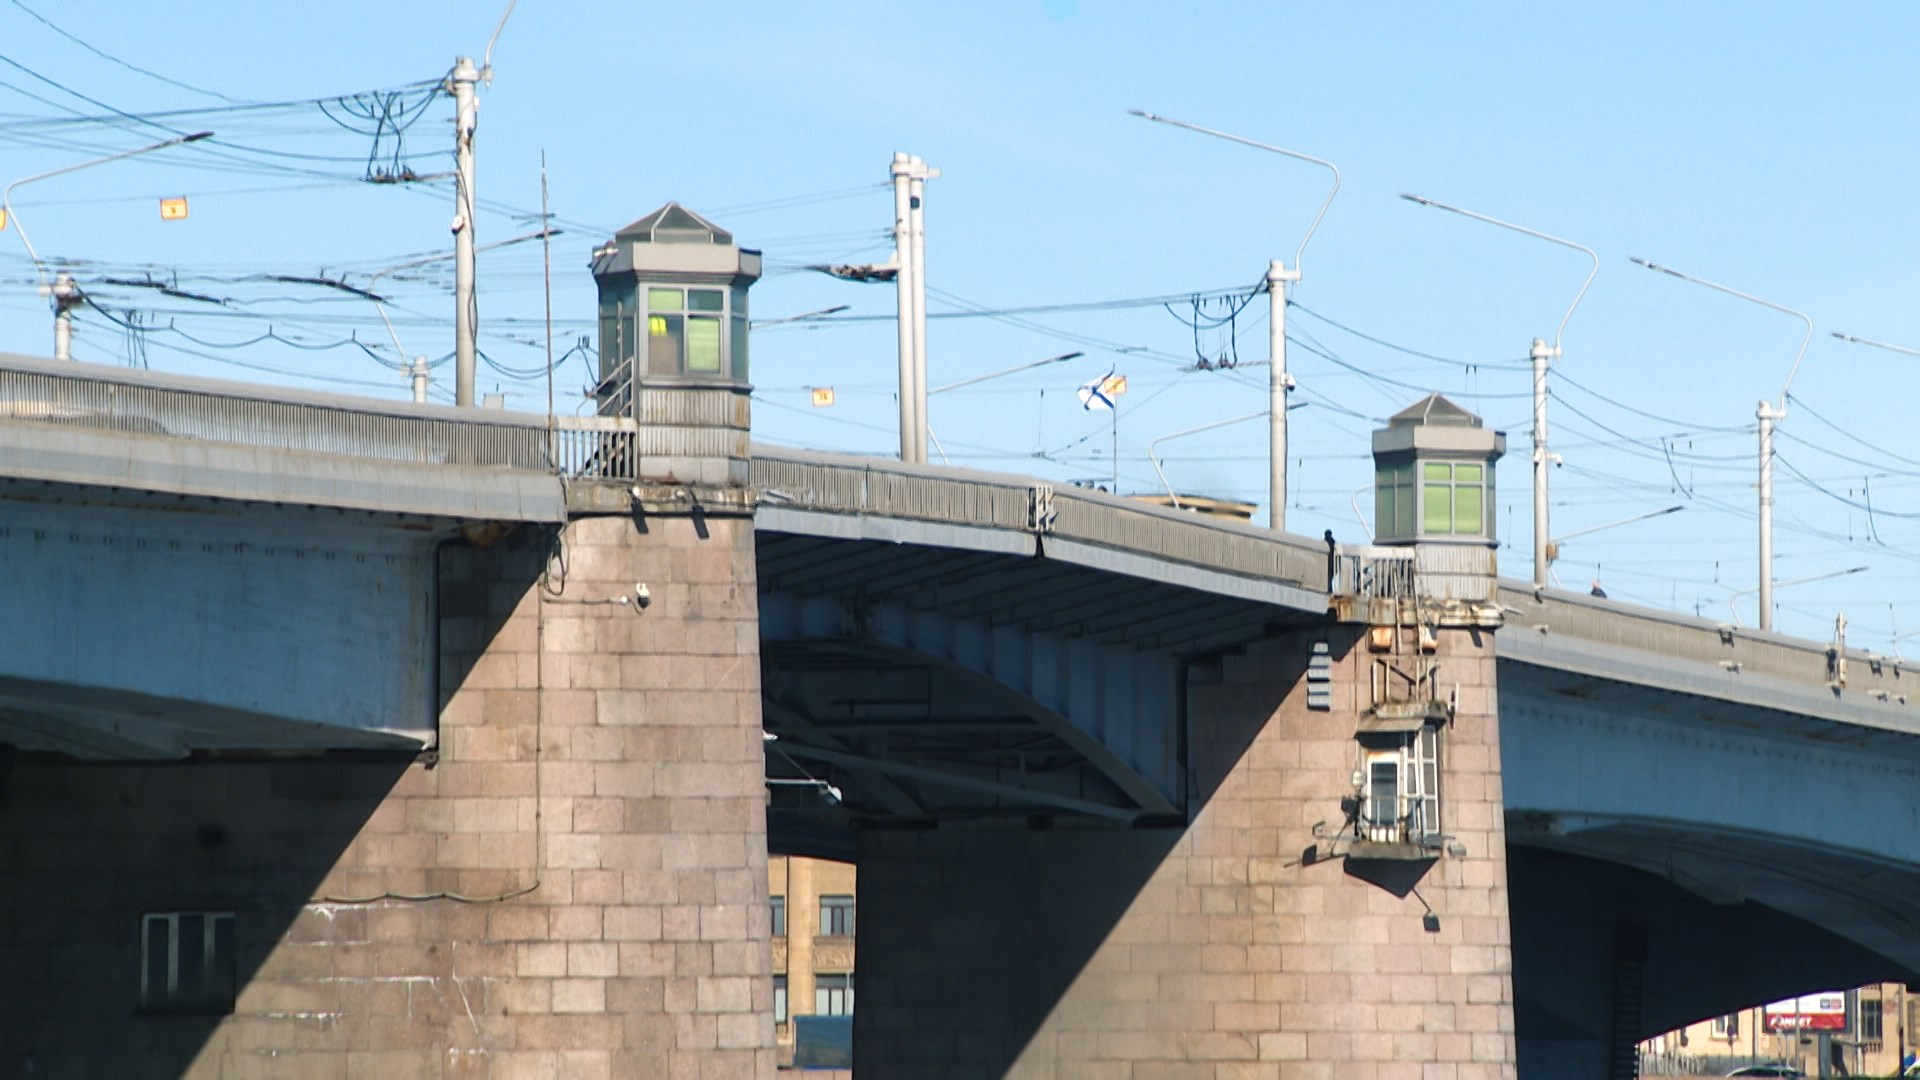 Самый-самый в Петербурге. Самый длинный, самый высокий из разводных и самый первый вантовый  –  мост Александра Невского